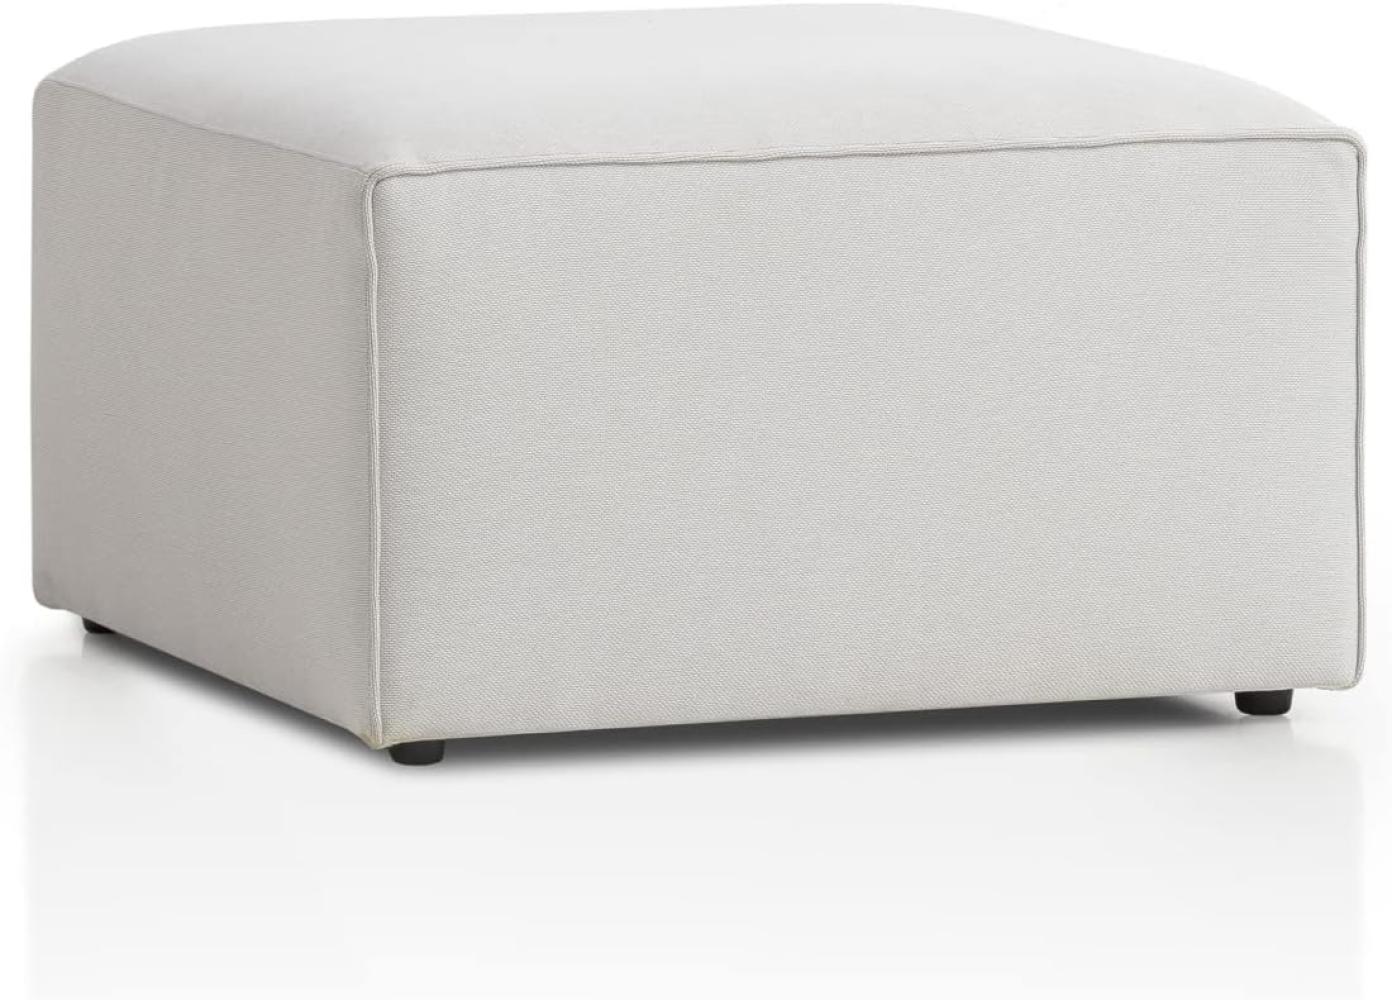 Genua Modular Sofa, individuell komibinierbare Wohnlandschaft, Hocker - strapazierfähiges Möbelgewebe, produziert nach deutschem Qualitätsstandard, weiß Bild 1